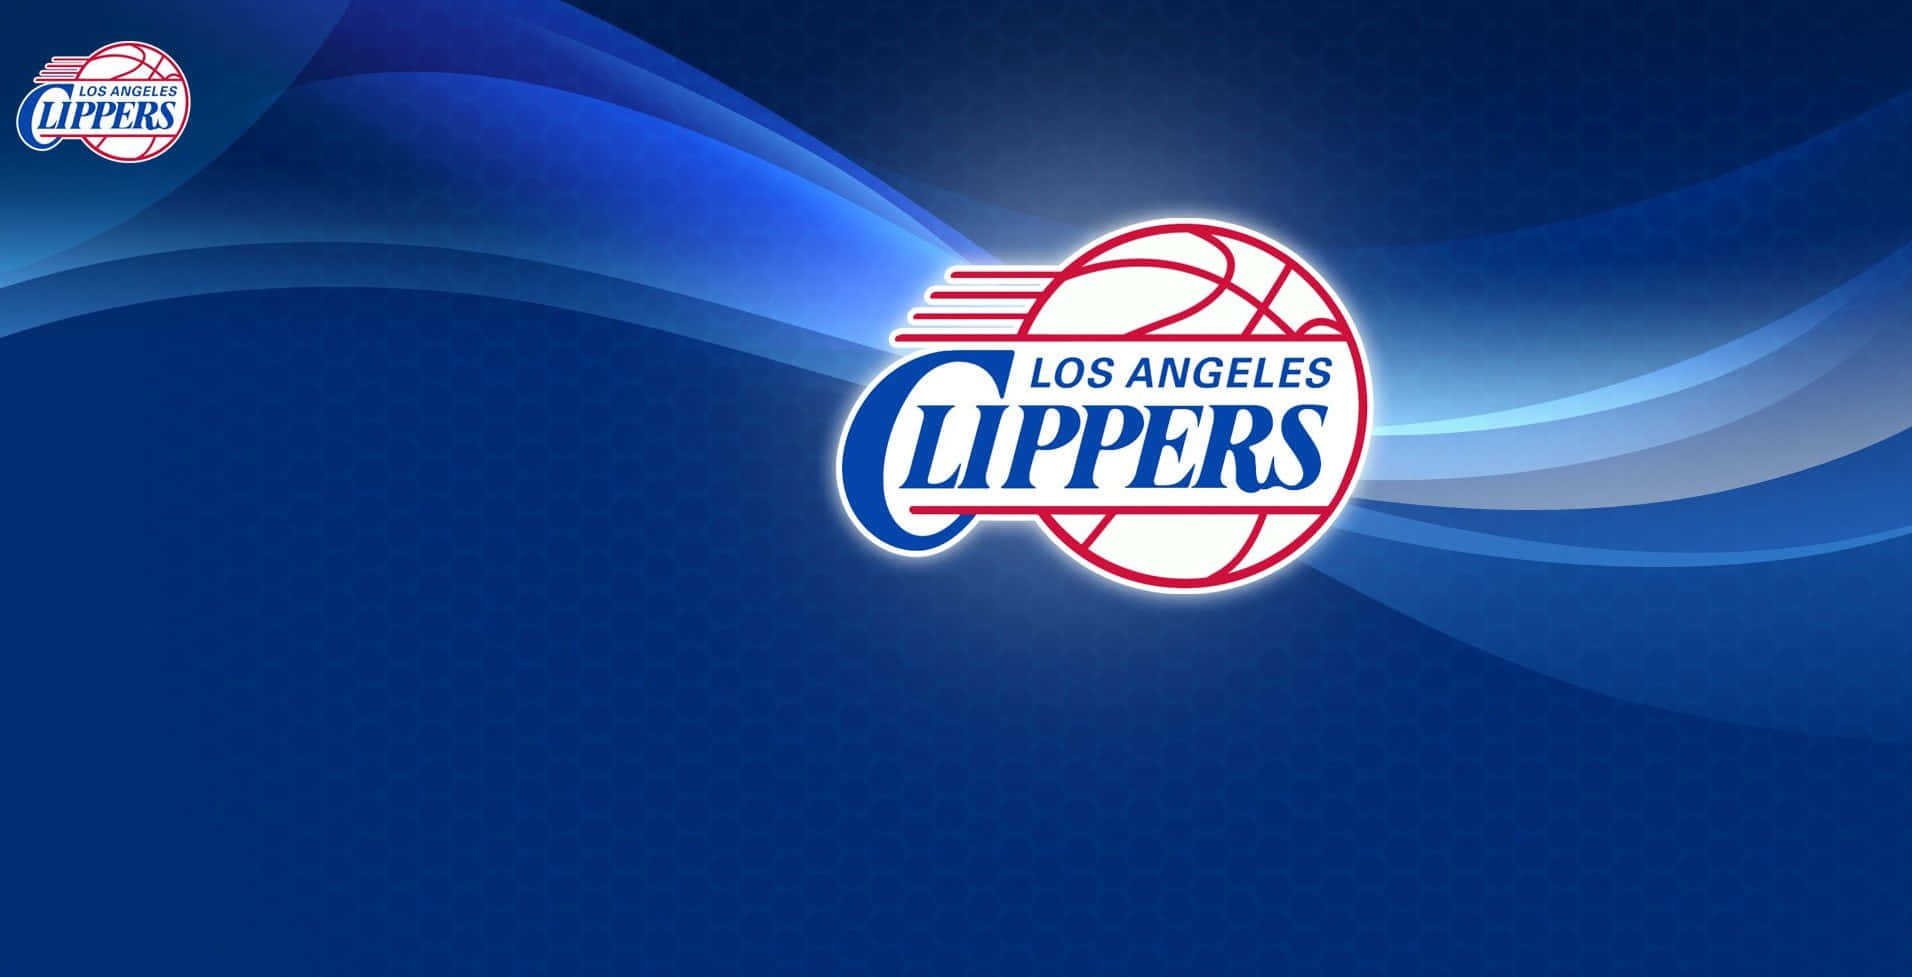 Blue NBA Team LA Clippers Logo Wallpaper